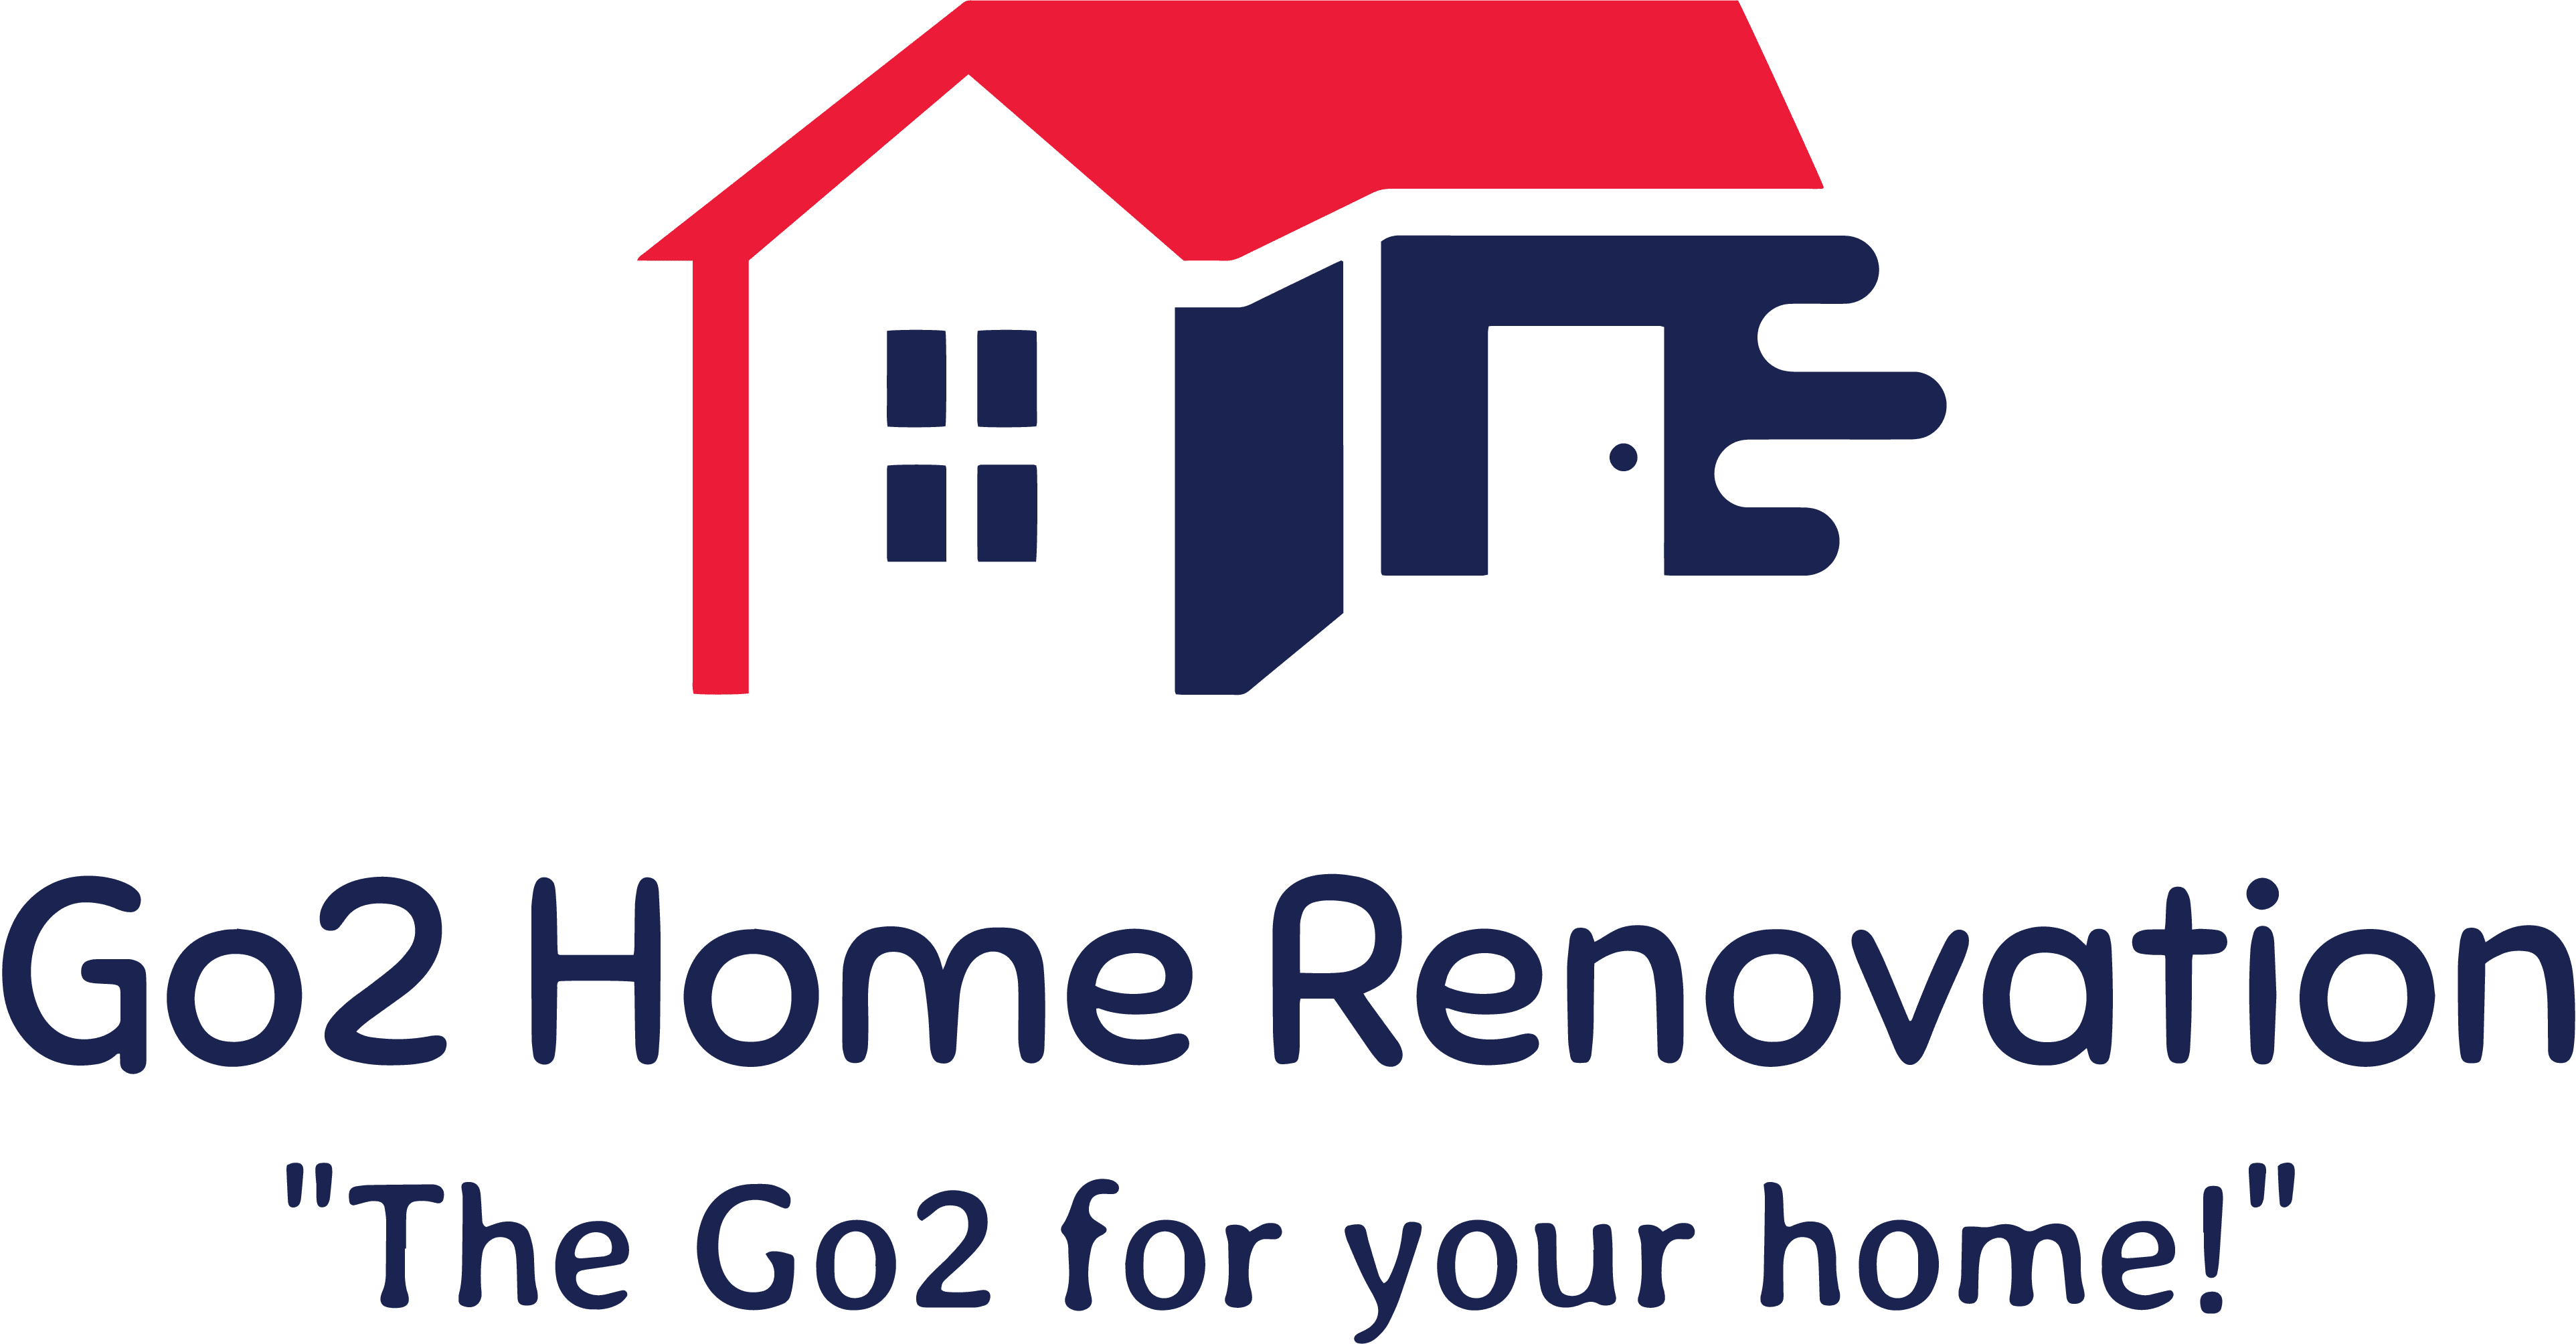 Go2 Home Renovation logo